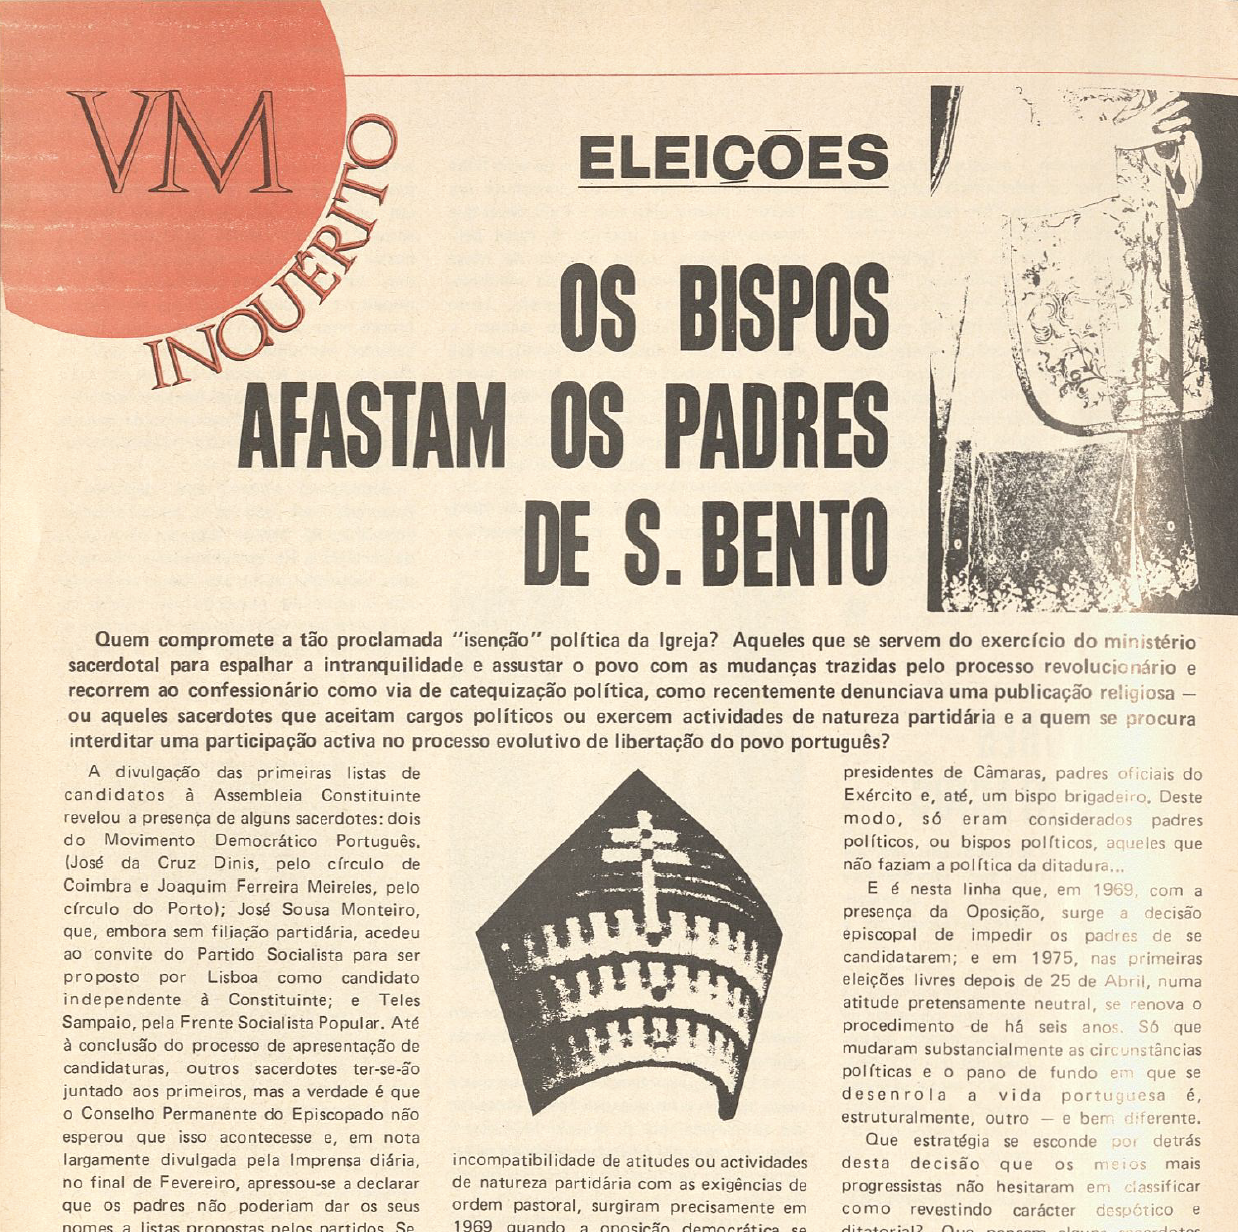 "Eleições  - Os Bispos afastam os padres e S. Bento"